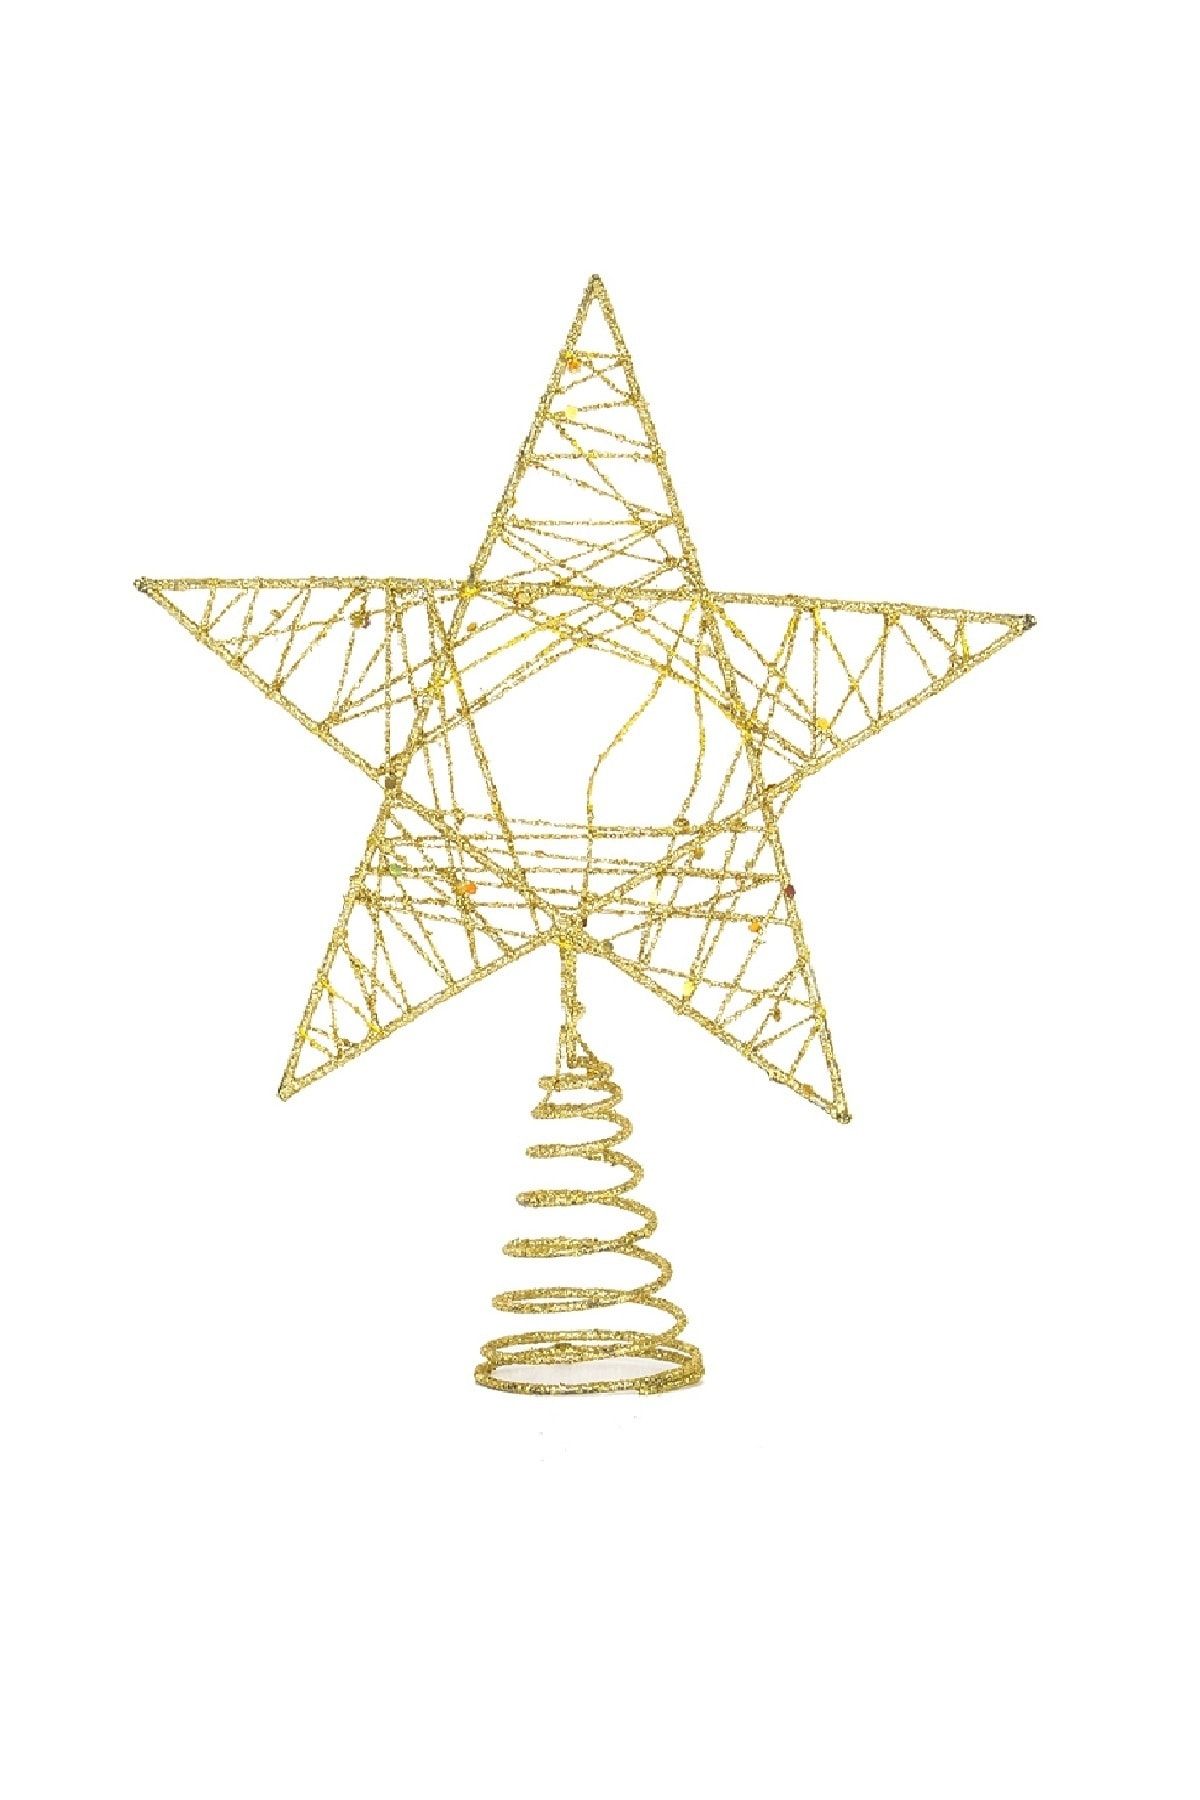 KullanAt Market Yılbaşı Ağaç Tepe Süsü Altın Simli Yıldız 18 x 22 cm